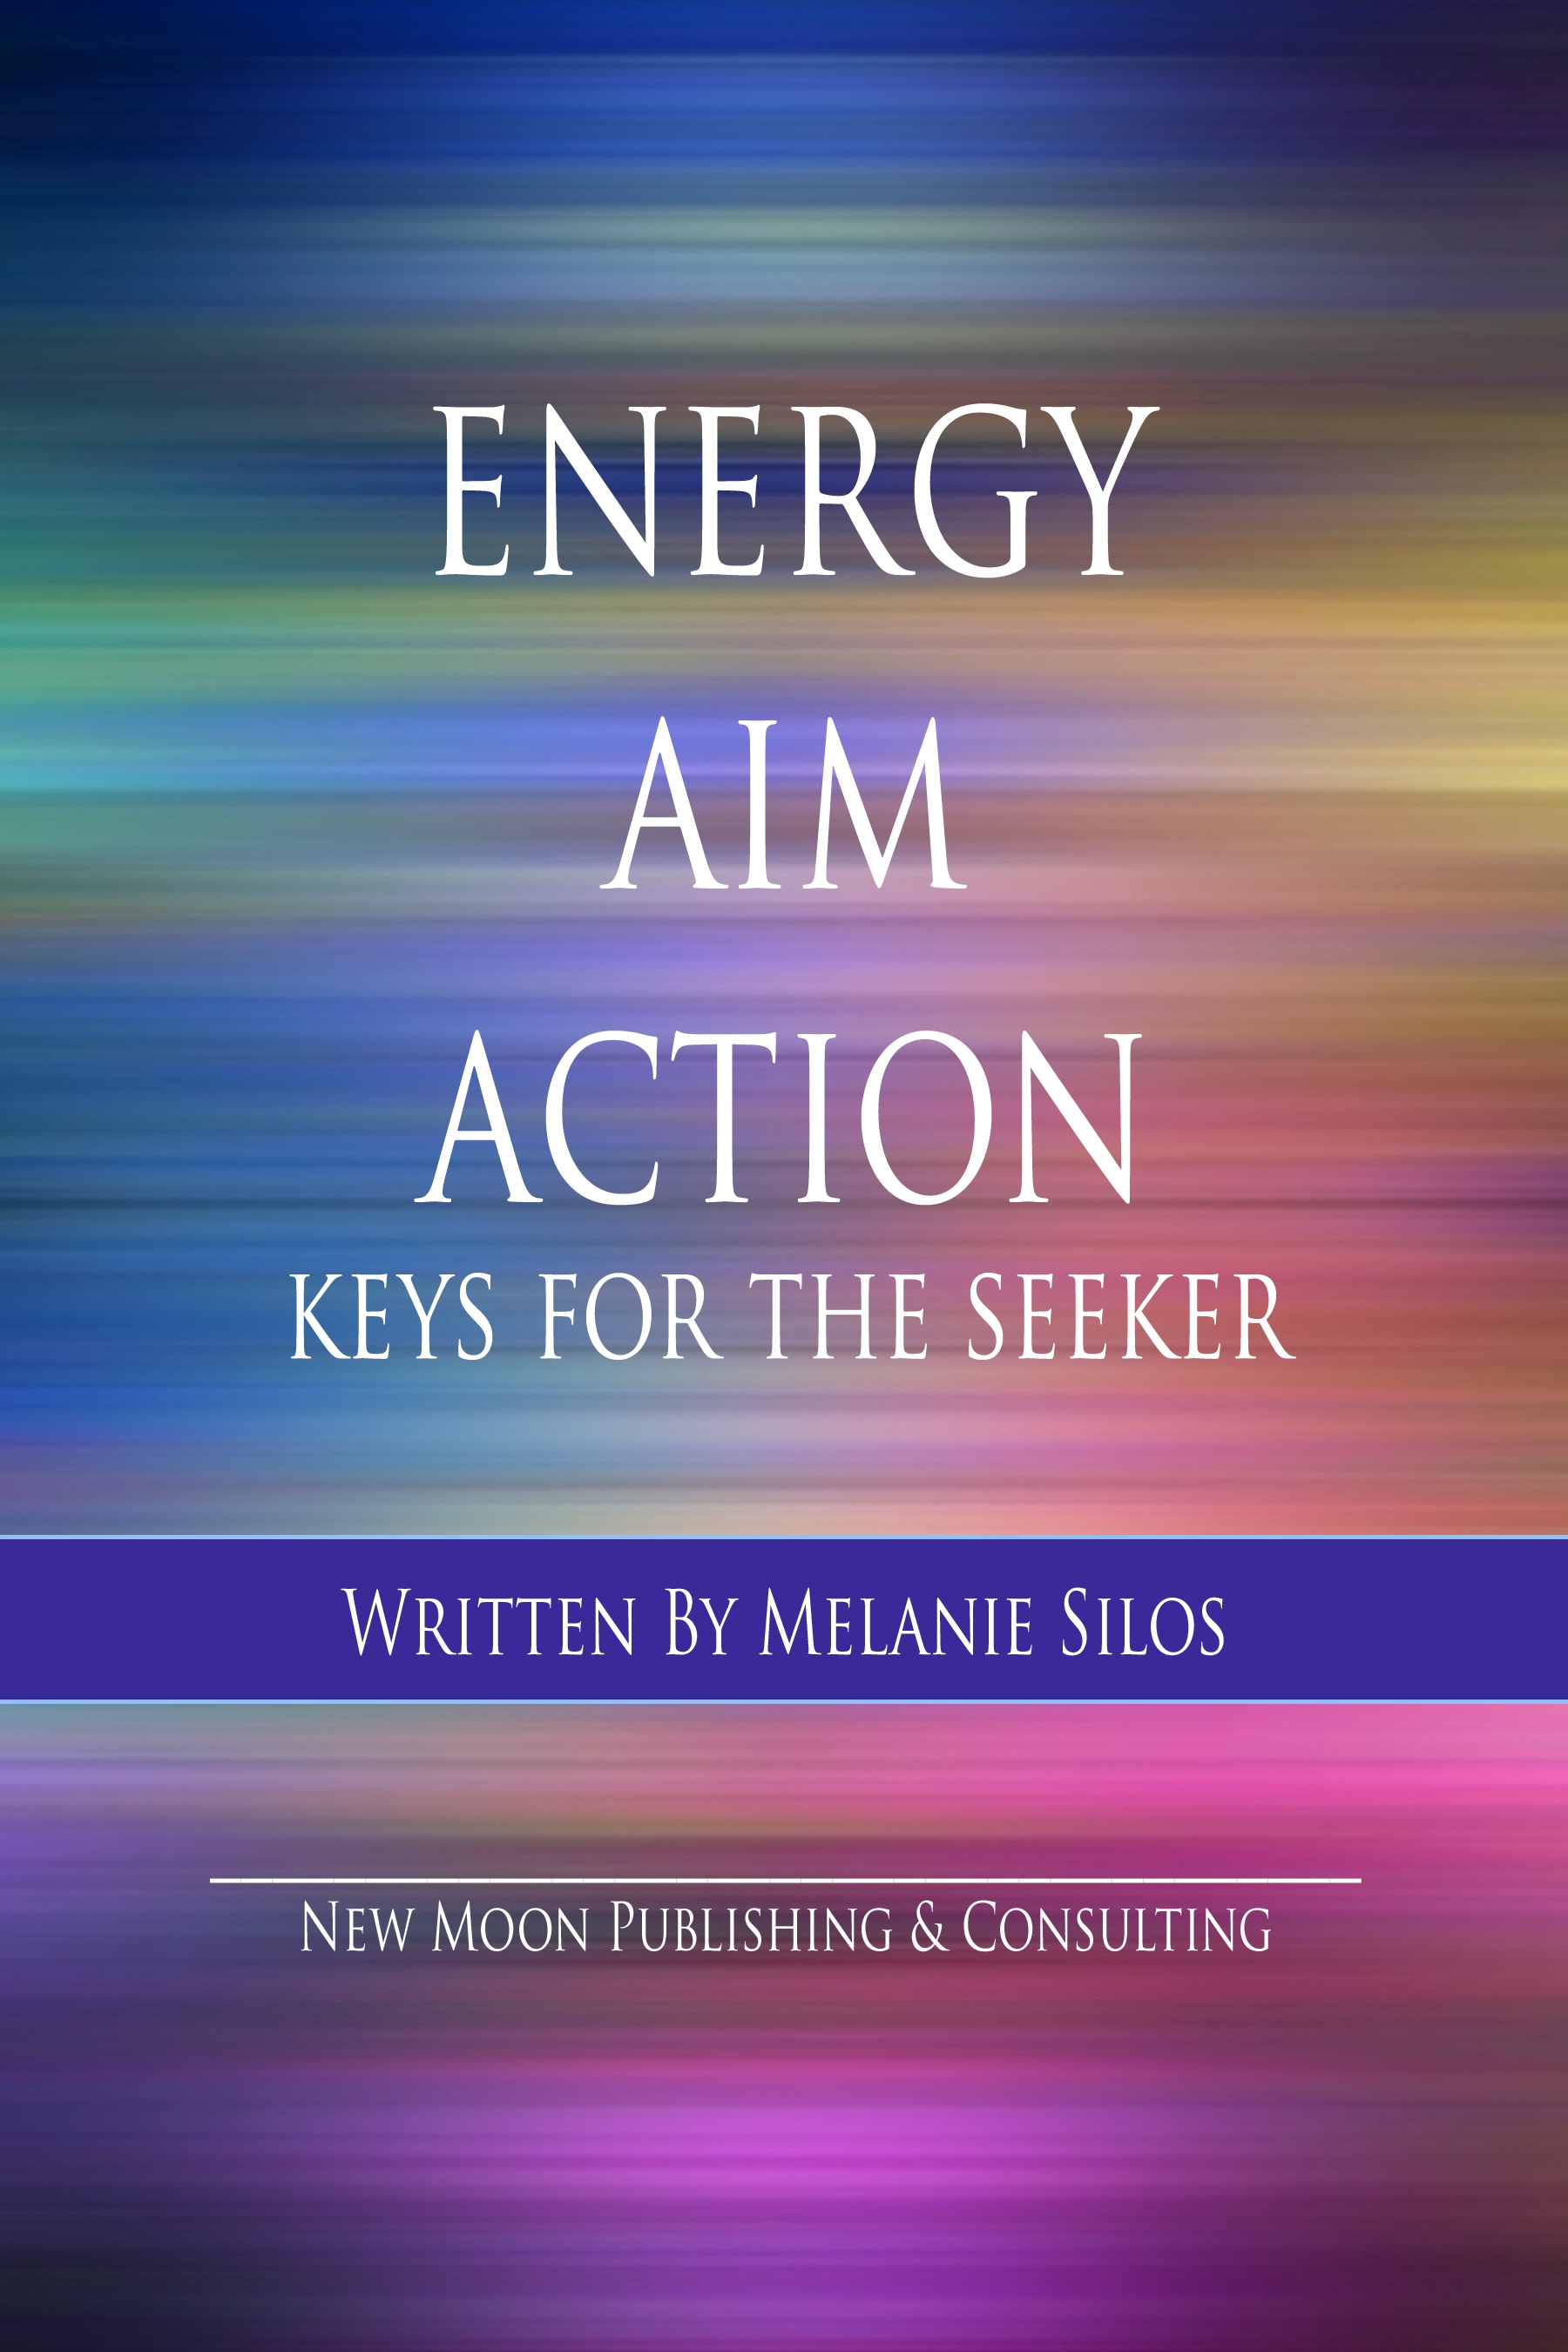 Energy, Aim, Action - Keys for the Seeker